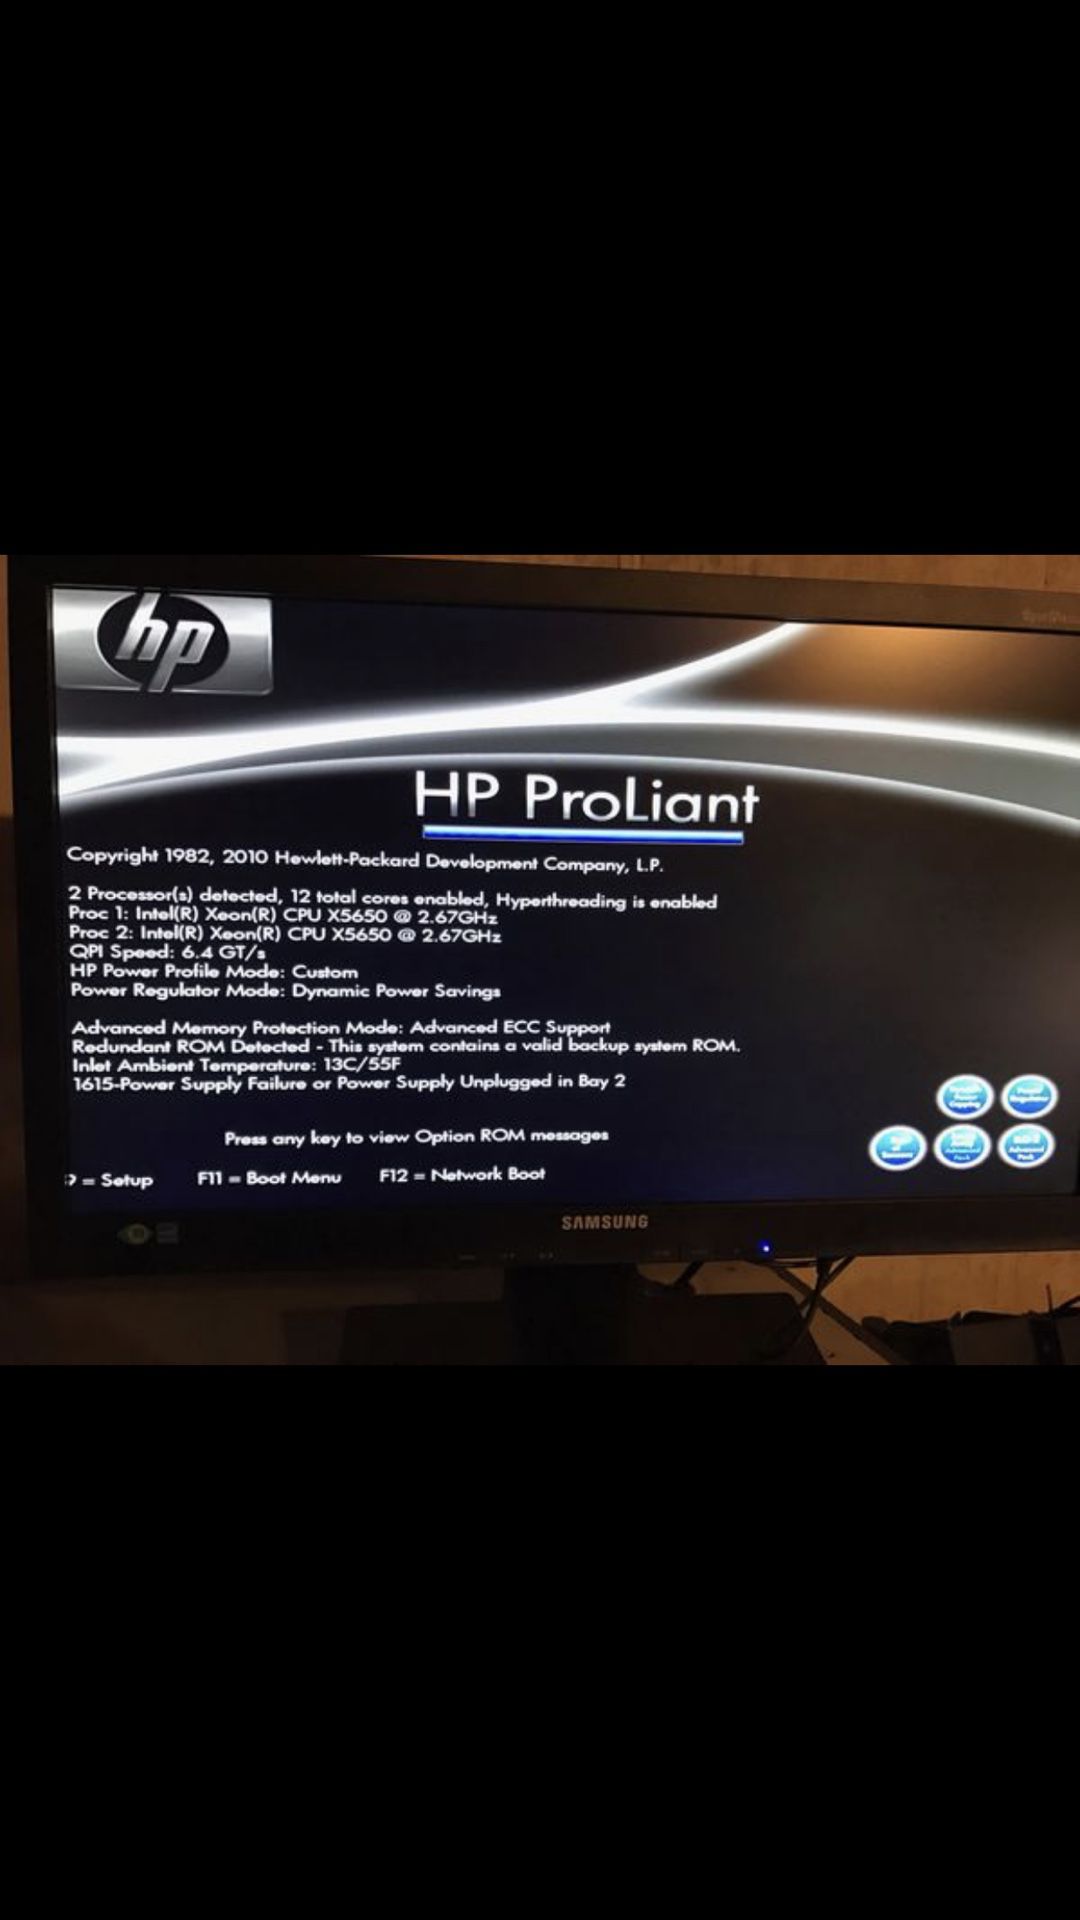 HP DL380 G7 - Server